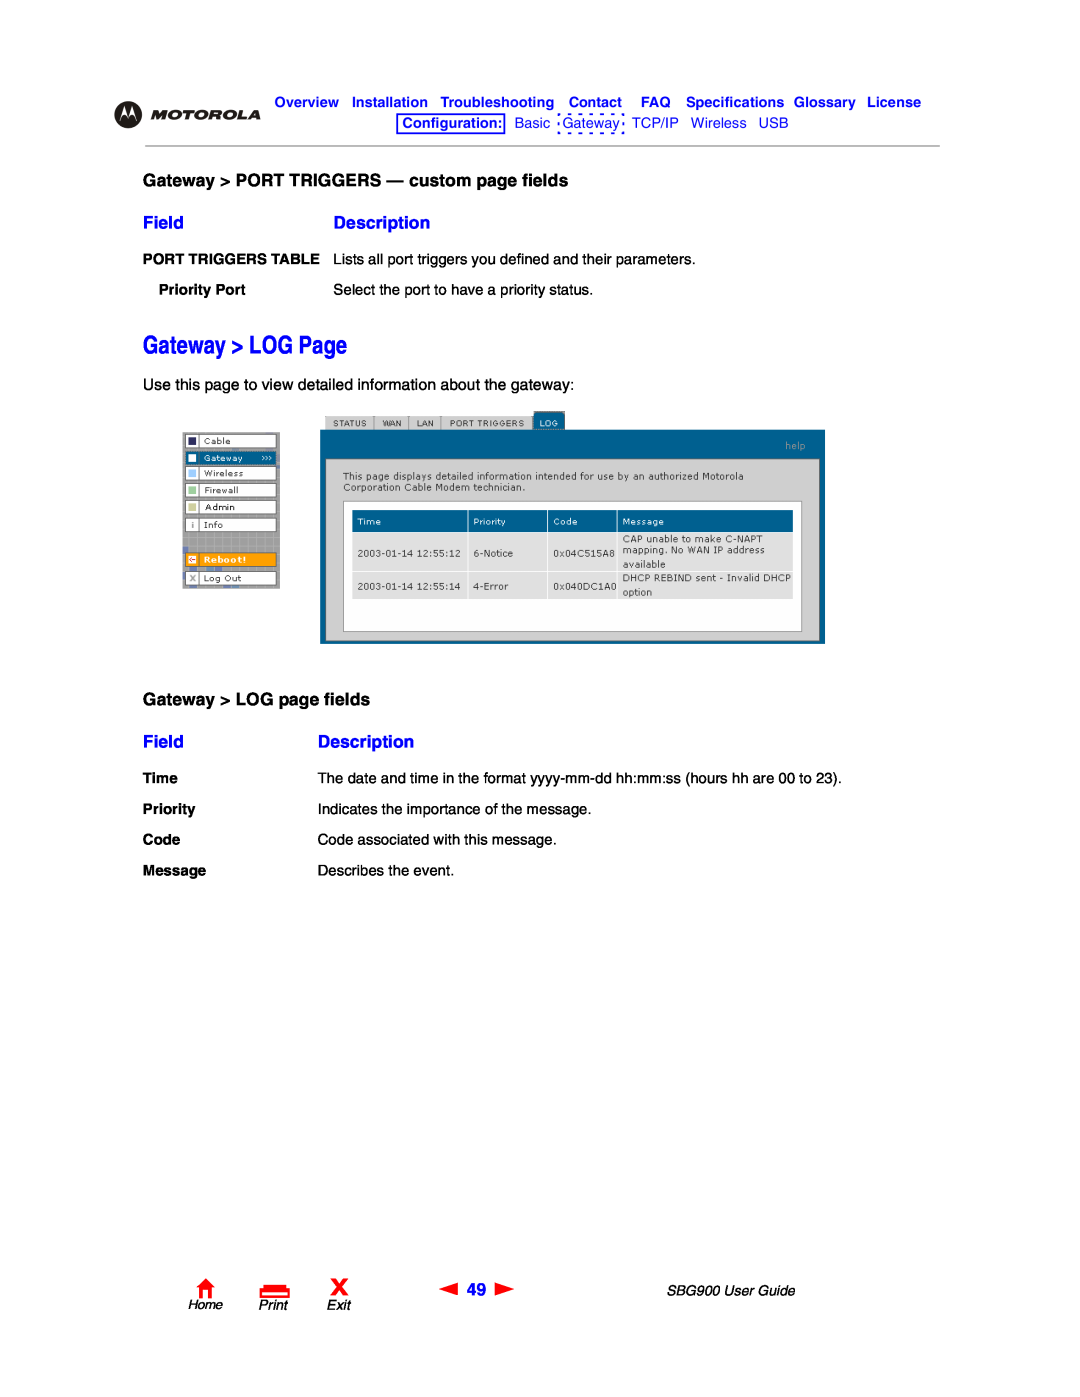 Motorola SBG900 Gateway LOG Page, Gateway LOG page fields, Gateway PORT TRIGGERS - custom page fields, FieldDescription 